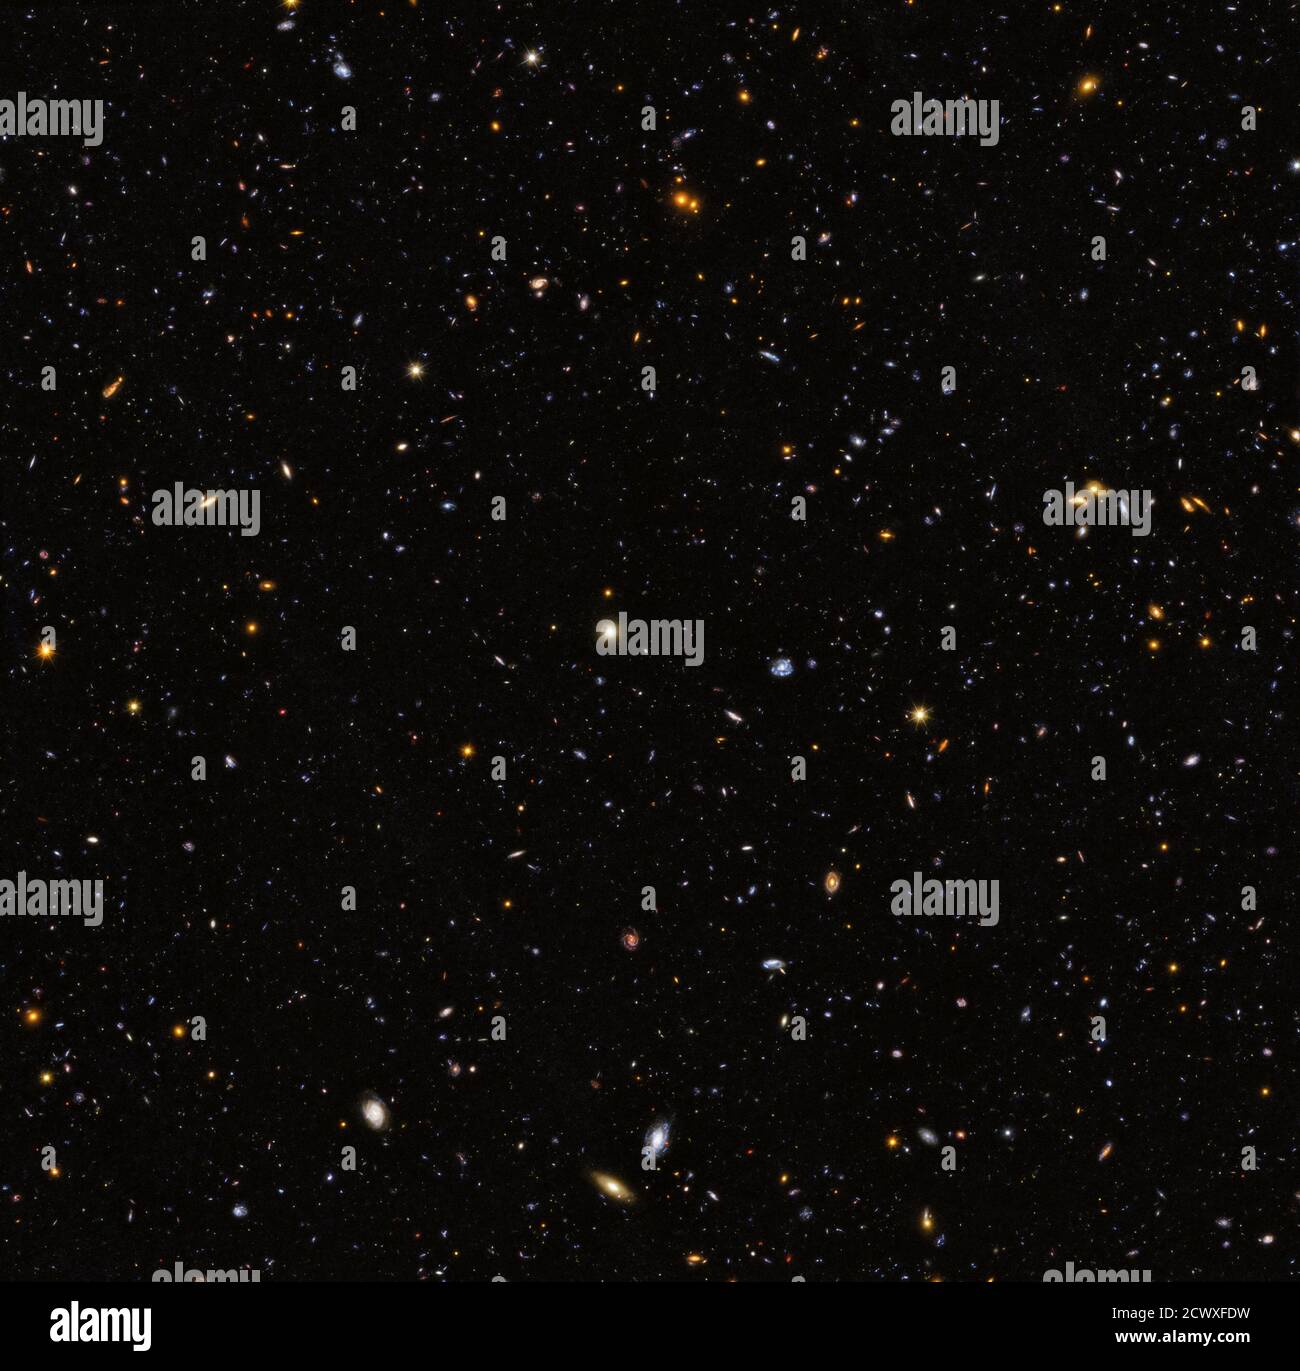 Hubble goes Deep Dieses Bild aus der Hubble Deep Ultraviolet Legacy Survey umfasst 12,000 sternbildende Galaxien im Sternbild Fornax - einer Region, die als DAS WAREN-Süd-Feld bekannt ist. Mit der Aufnahme von ultraviolettem Licht haben Astronomen mit dem Hubble-Weltraumteleskop der NASA/ESA die größte Panoramaansicht des Feuers und der Wut der Sterngeburt im fernen Universum aufgenommen. Die verkehrsreichste Sternentstehungsperiode im Kosmos geschah etwa drei Milliarden Jahre nach dem Urknall. Bisher war ultraviolettes Licht das fehlende Stück des kosmischen Puzzles. Jetzt, kombiniert mit Daten in Infrarot und Stockfoto